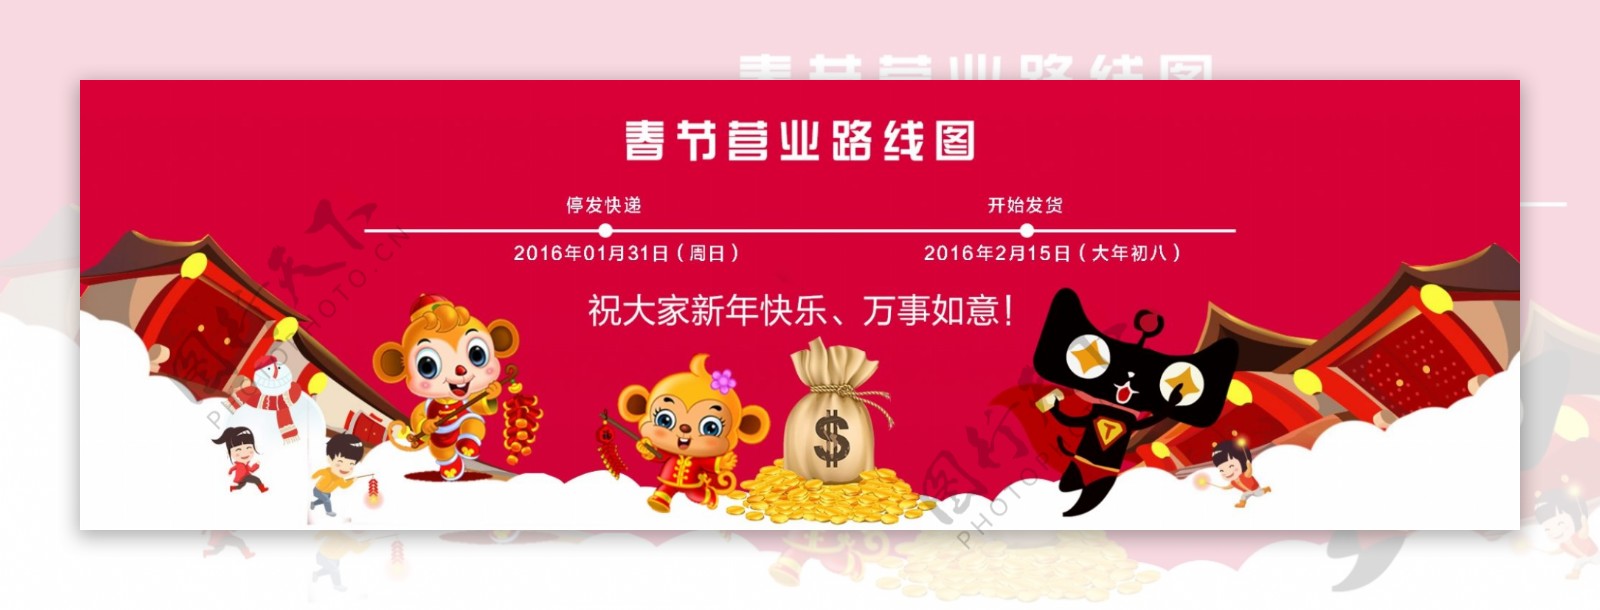 天猫春节首页海报设计